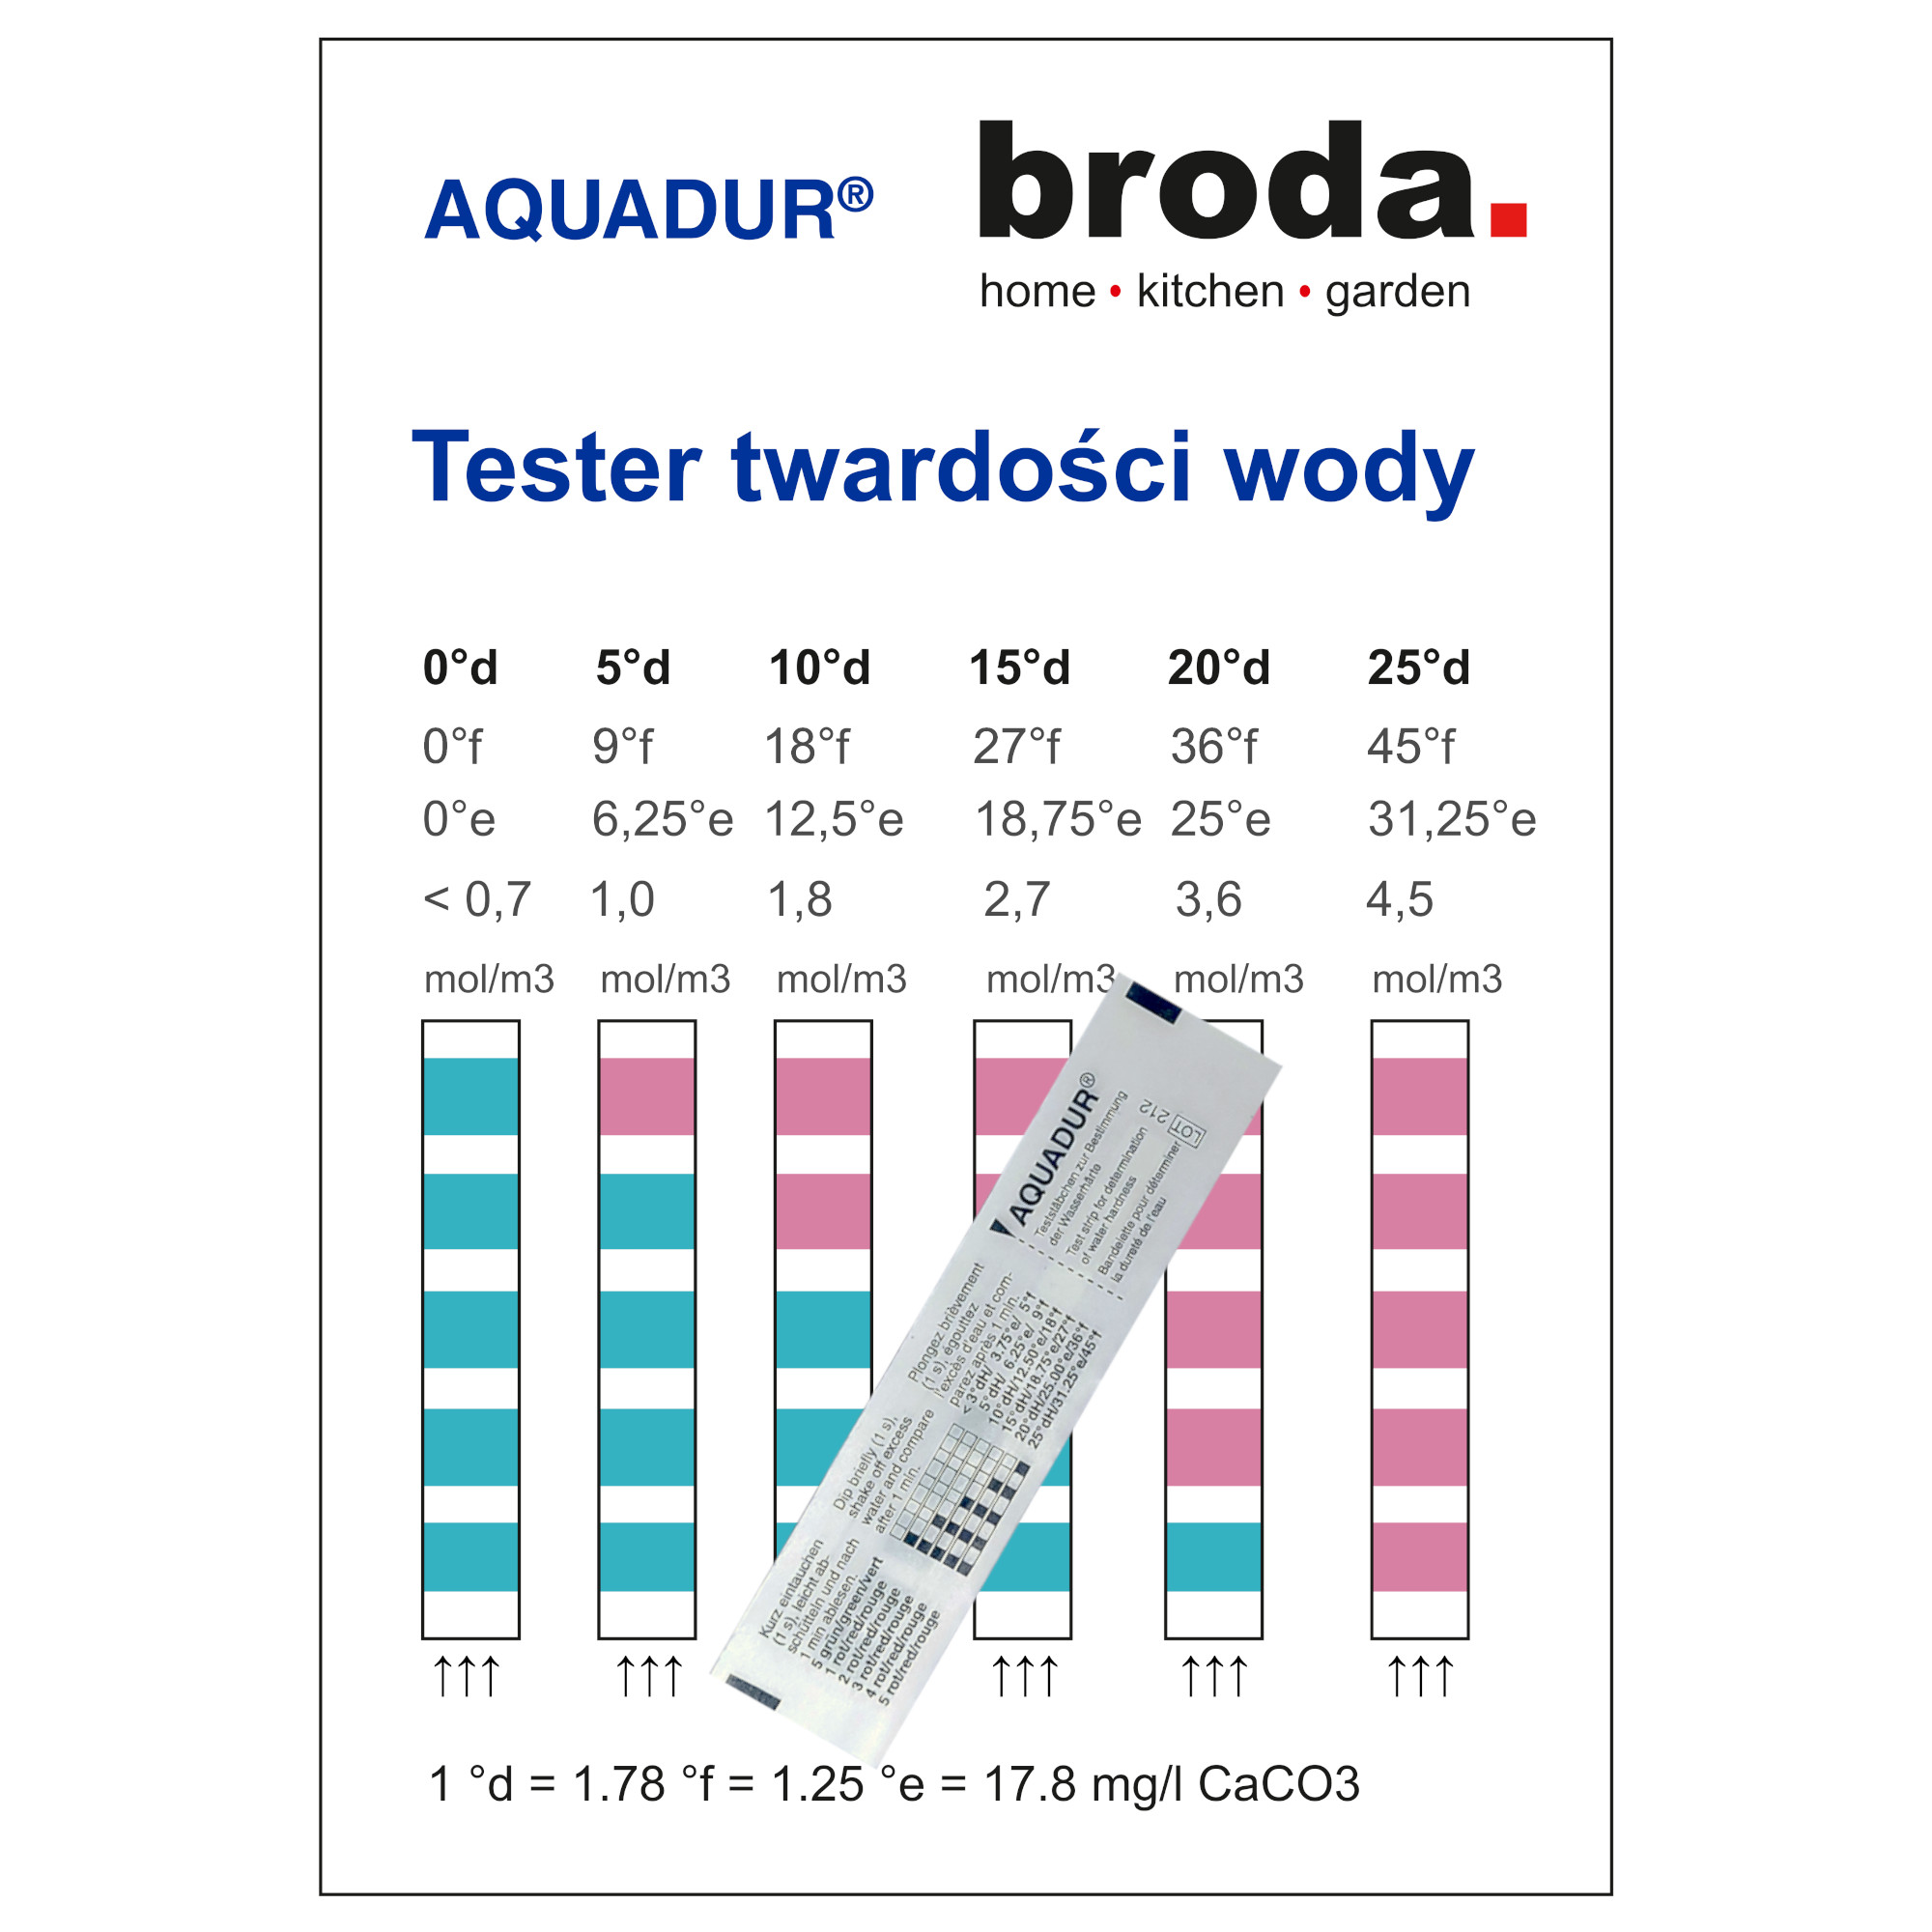 AQUADUR - Paskowy tester twardości wody